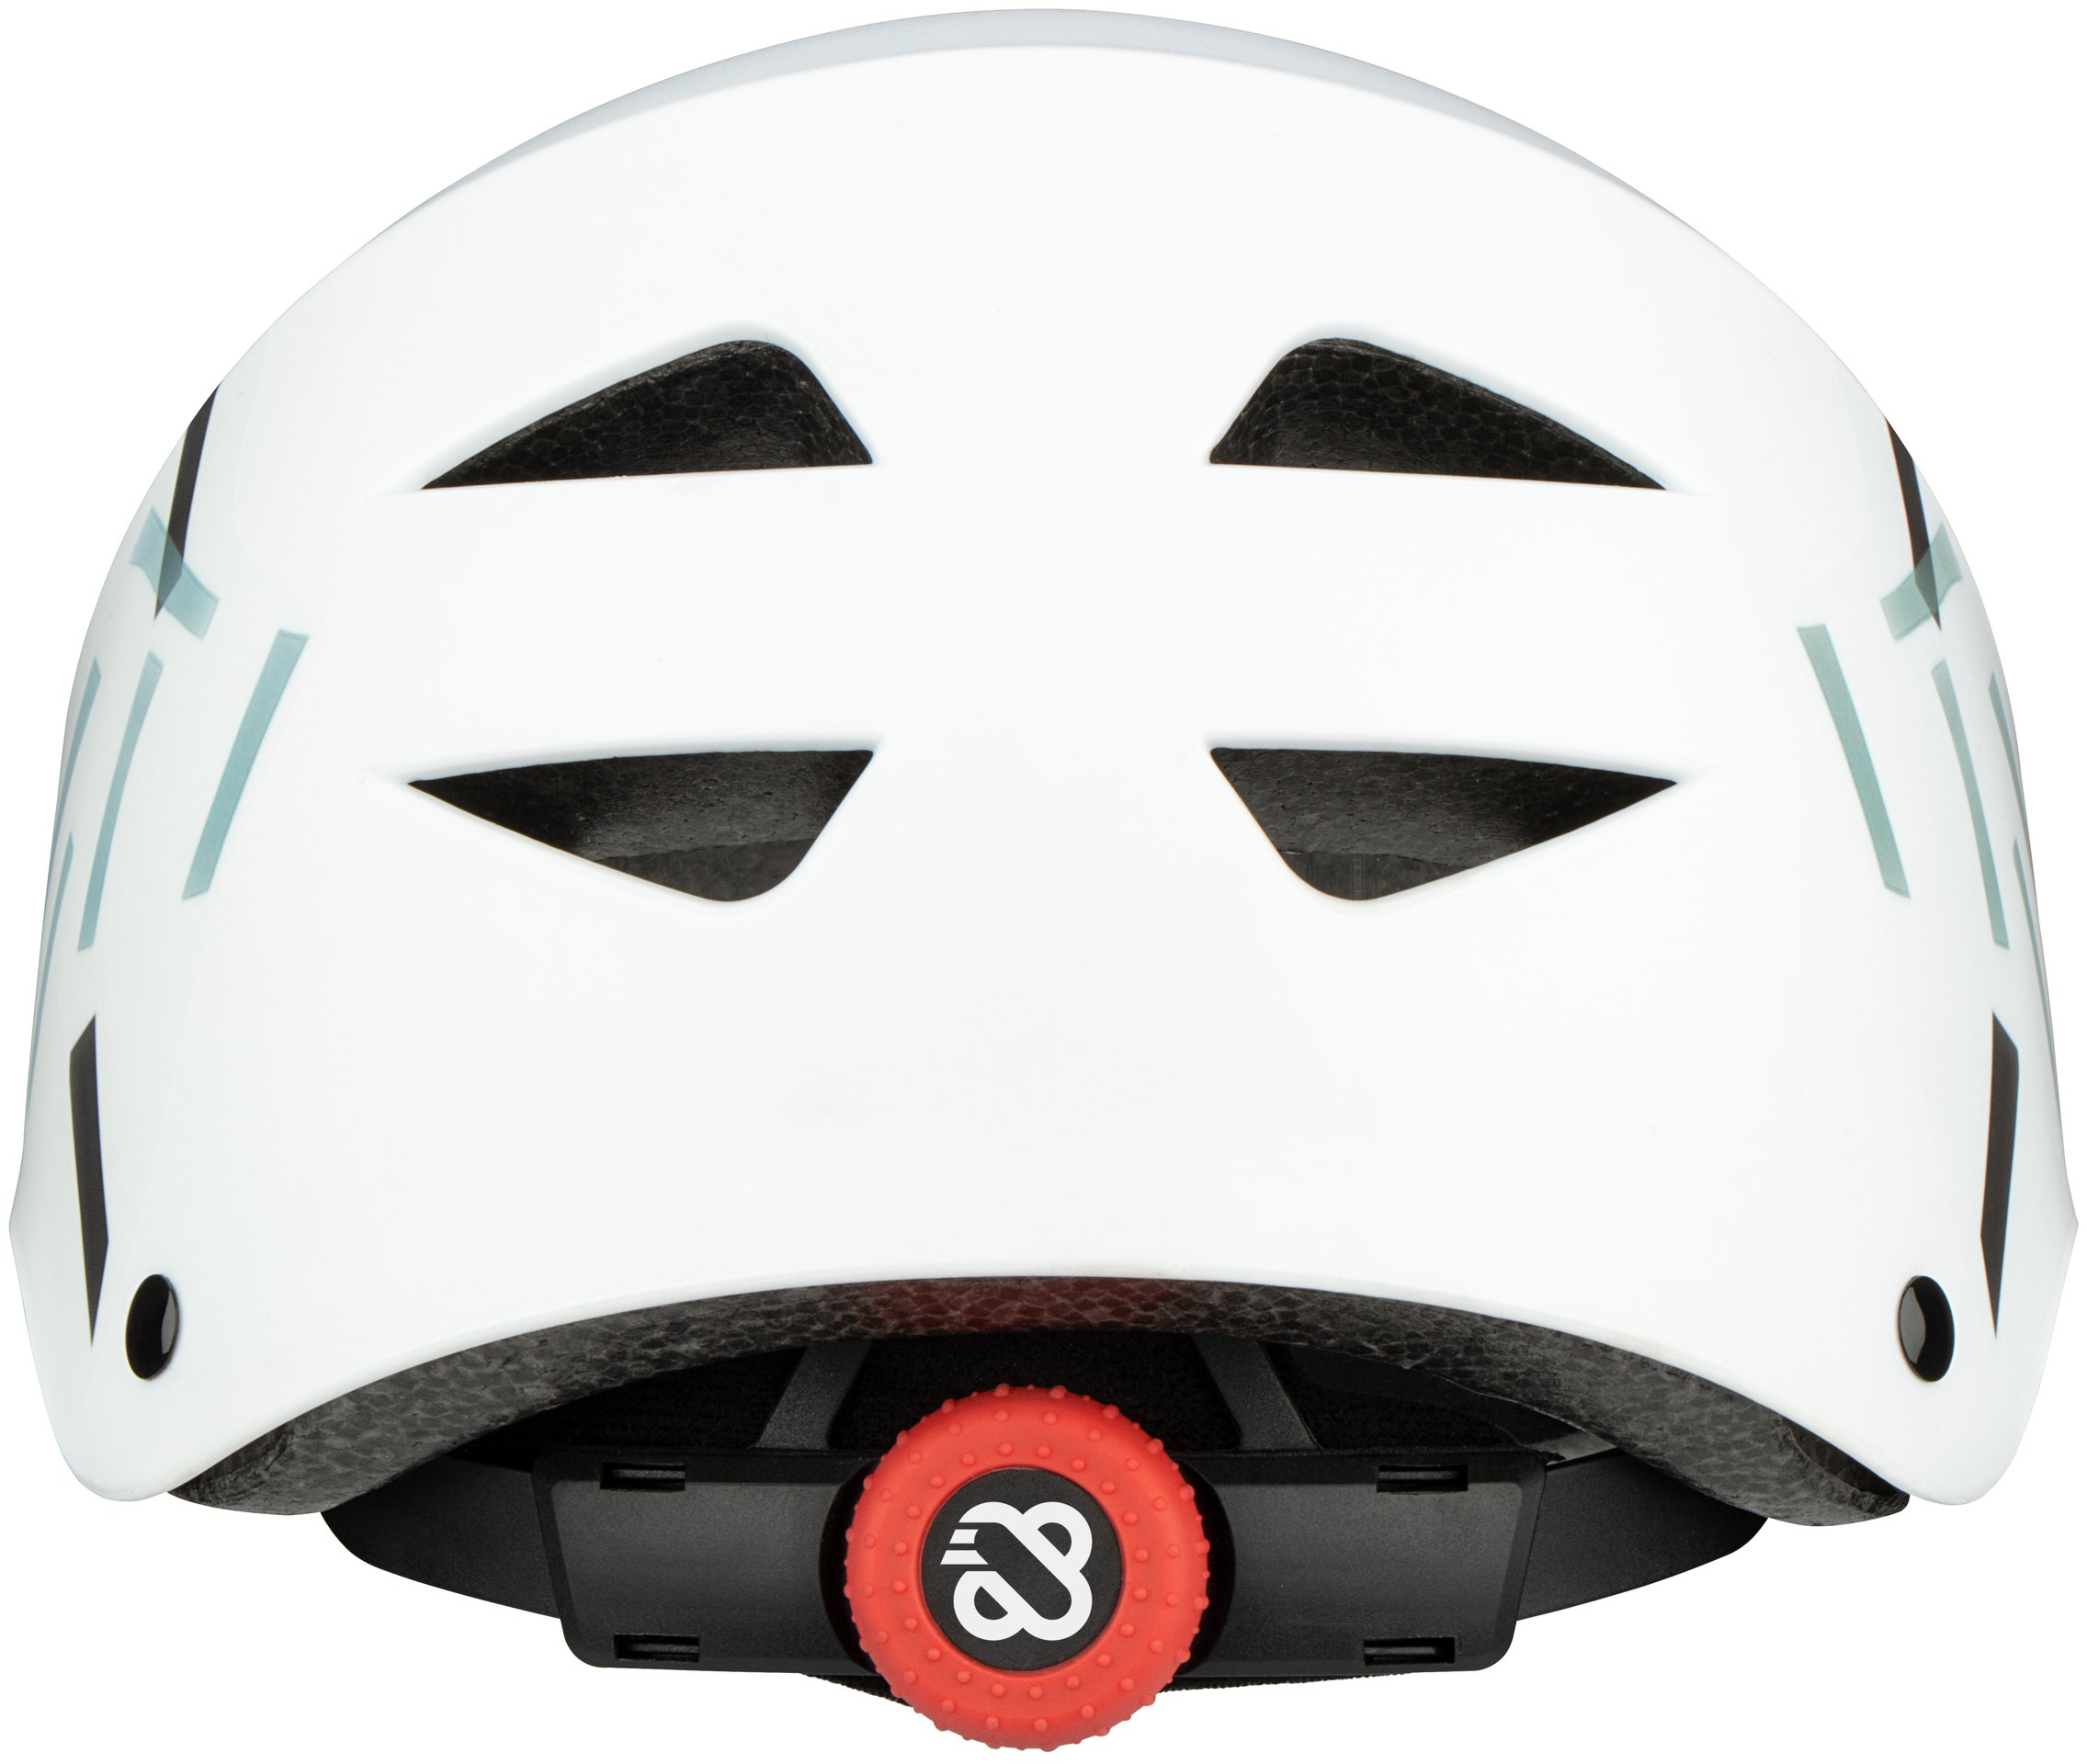 Skate Helmet - High Topper